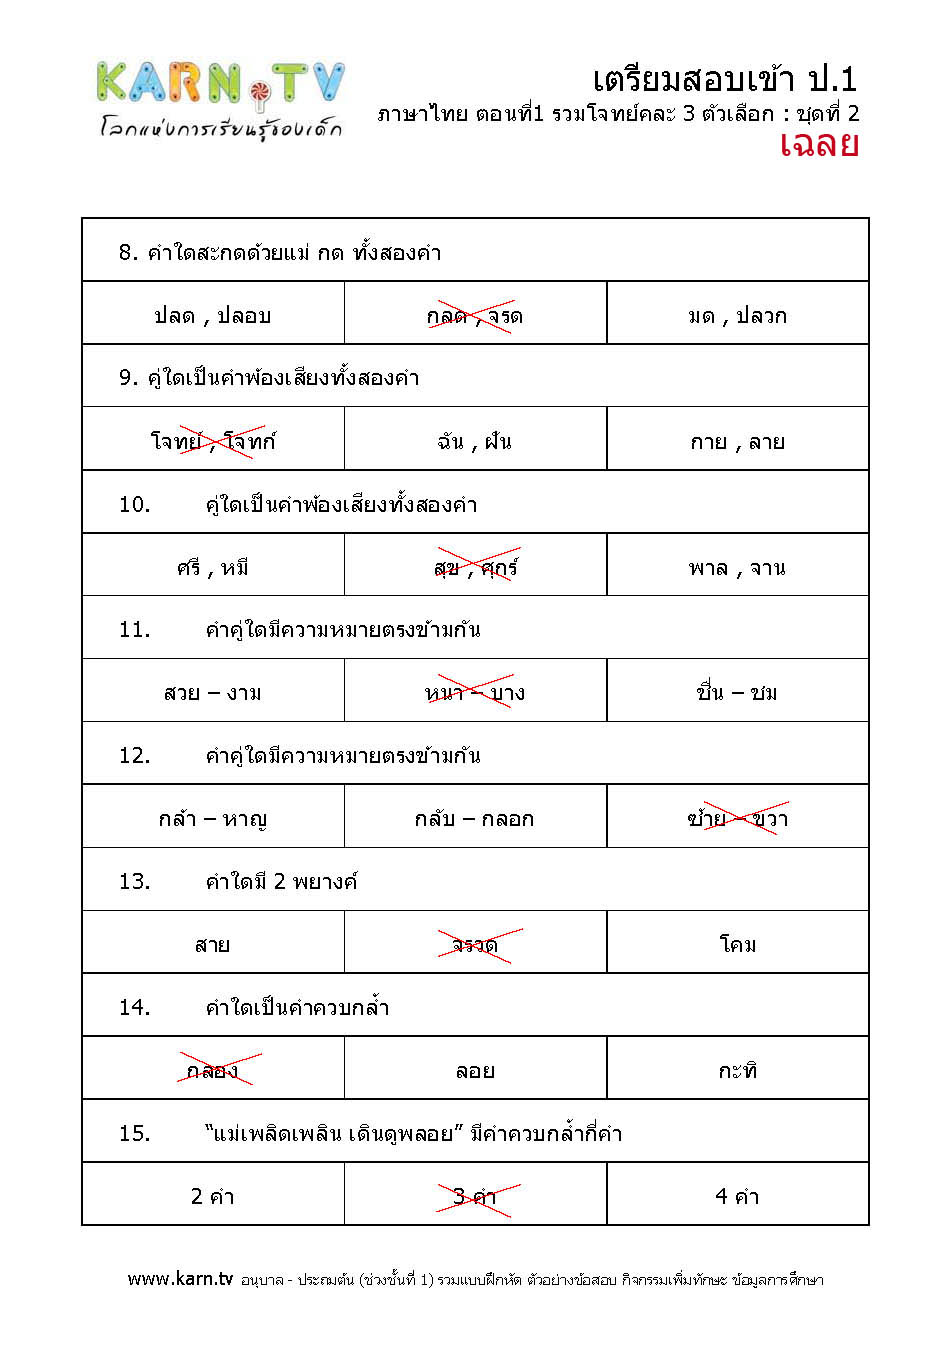 ภาษาไทย รวมโจทย์คละ 3 ตัวเลือก ชุด 2 (เฉลย)